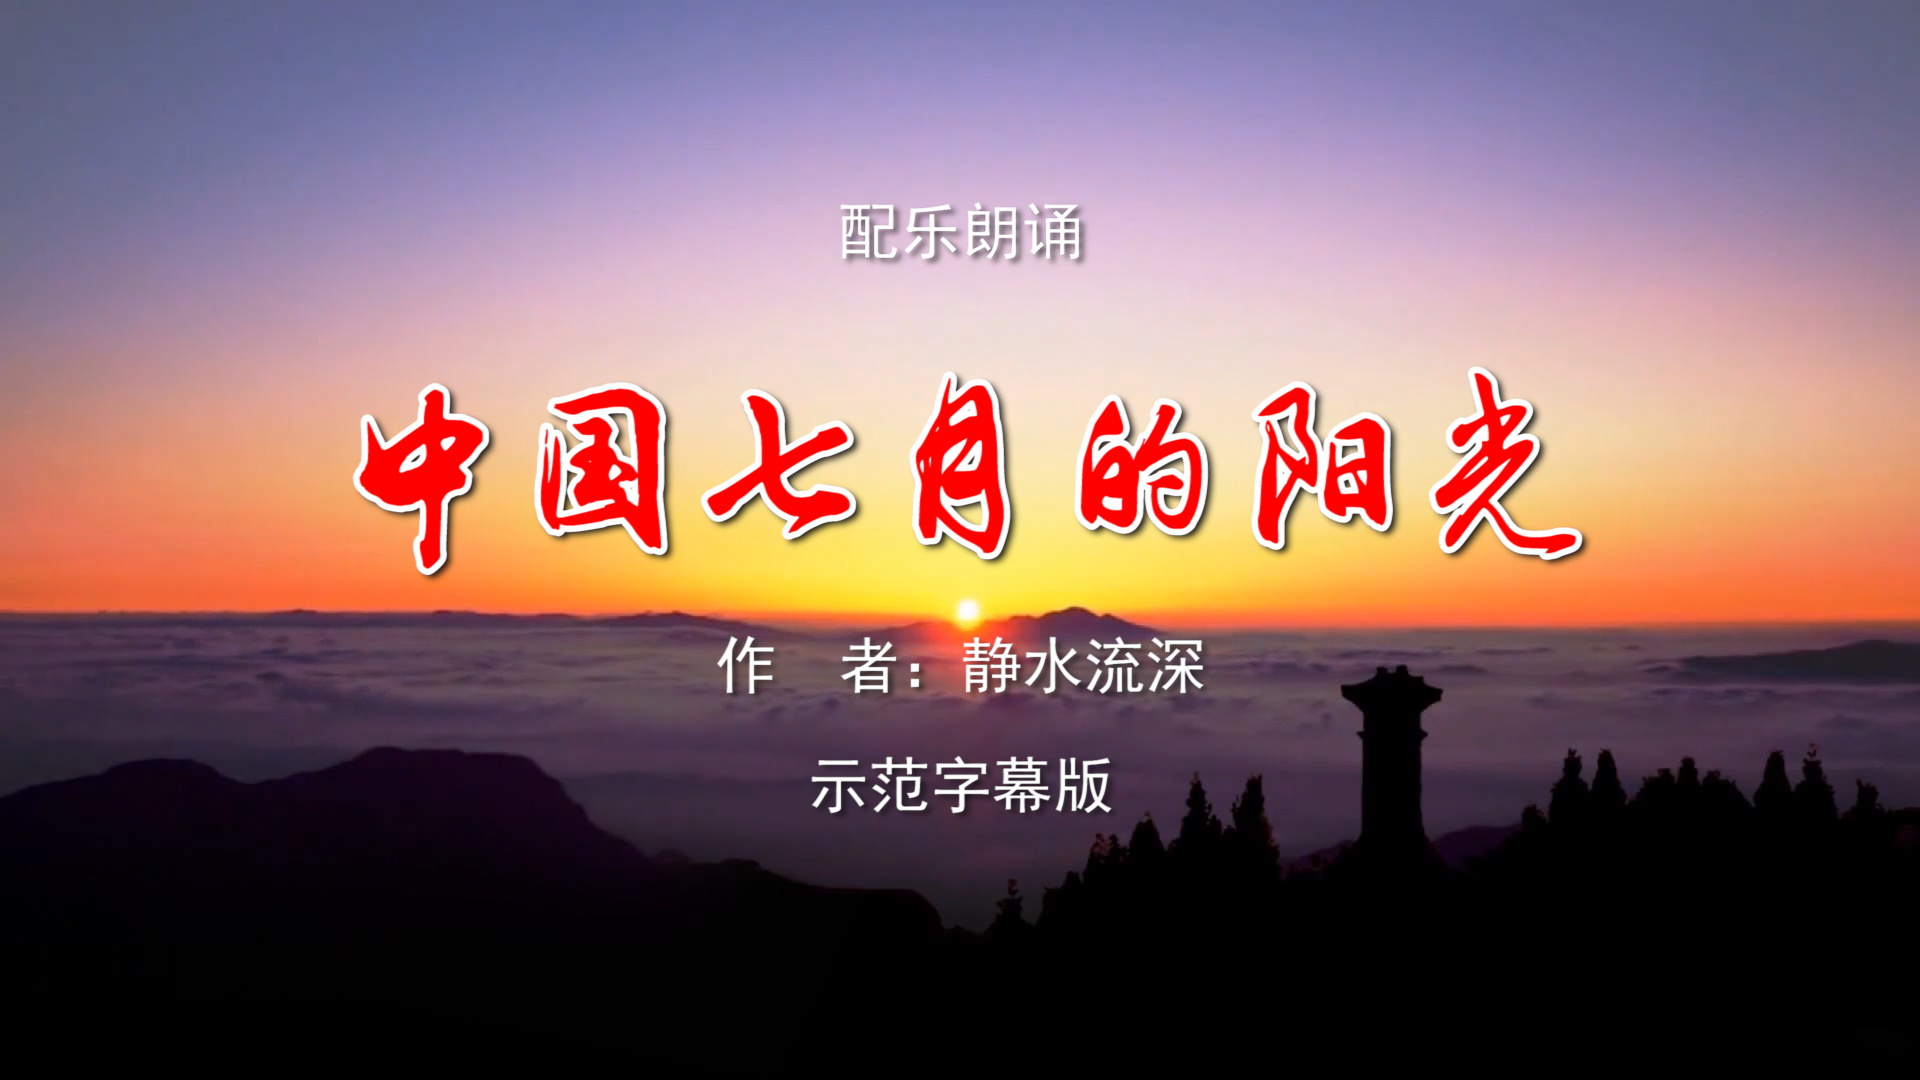 中国七月的阳光 建党百年诗歌朗诵配乐伴奏舞台演出LED背景大屏幕视频素材TV